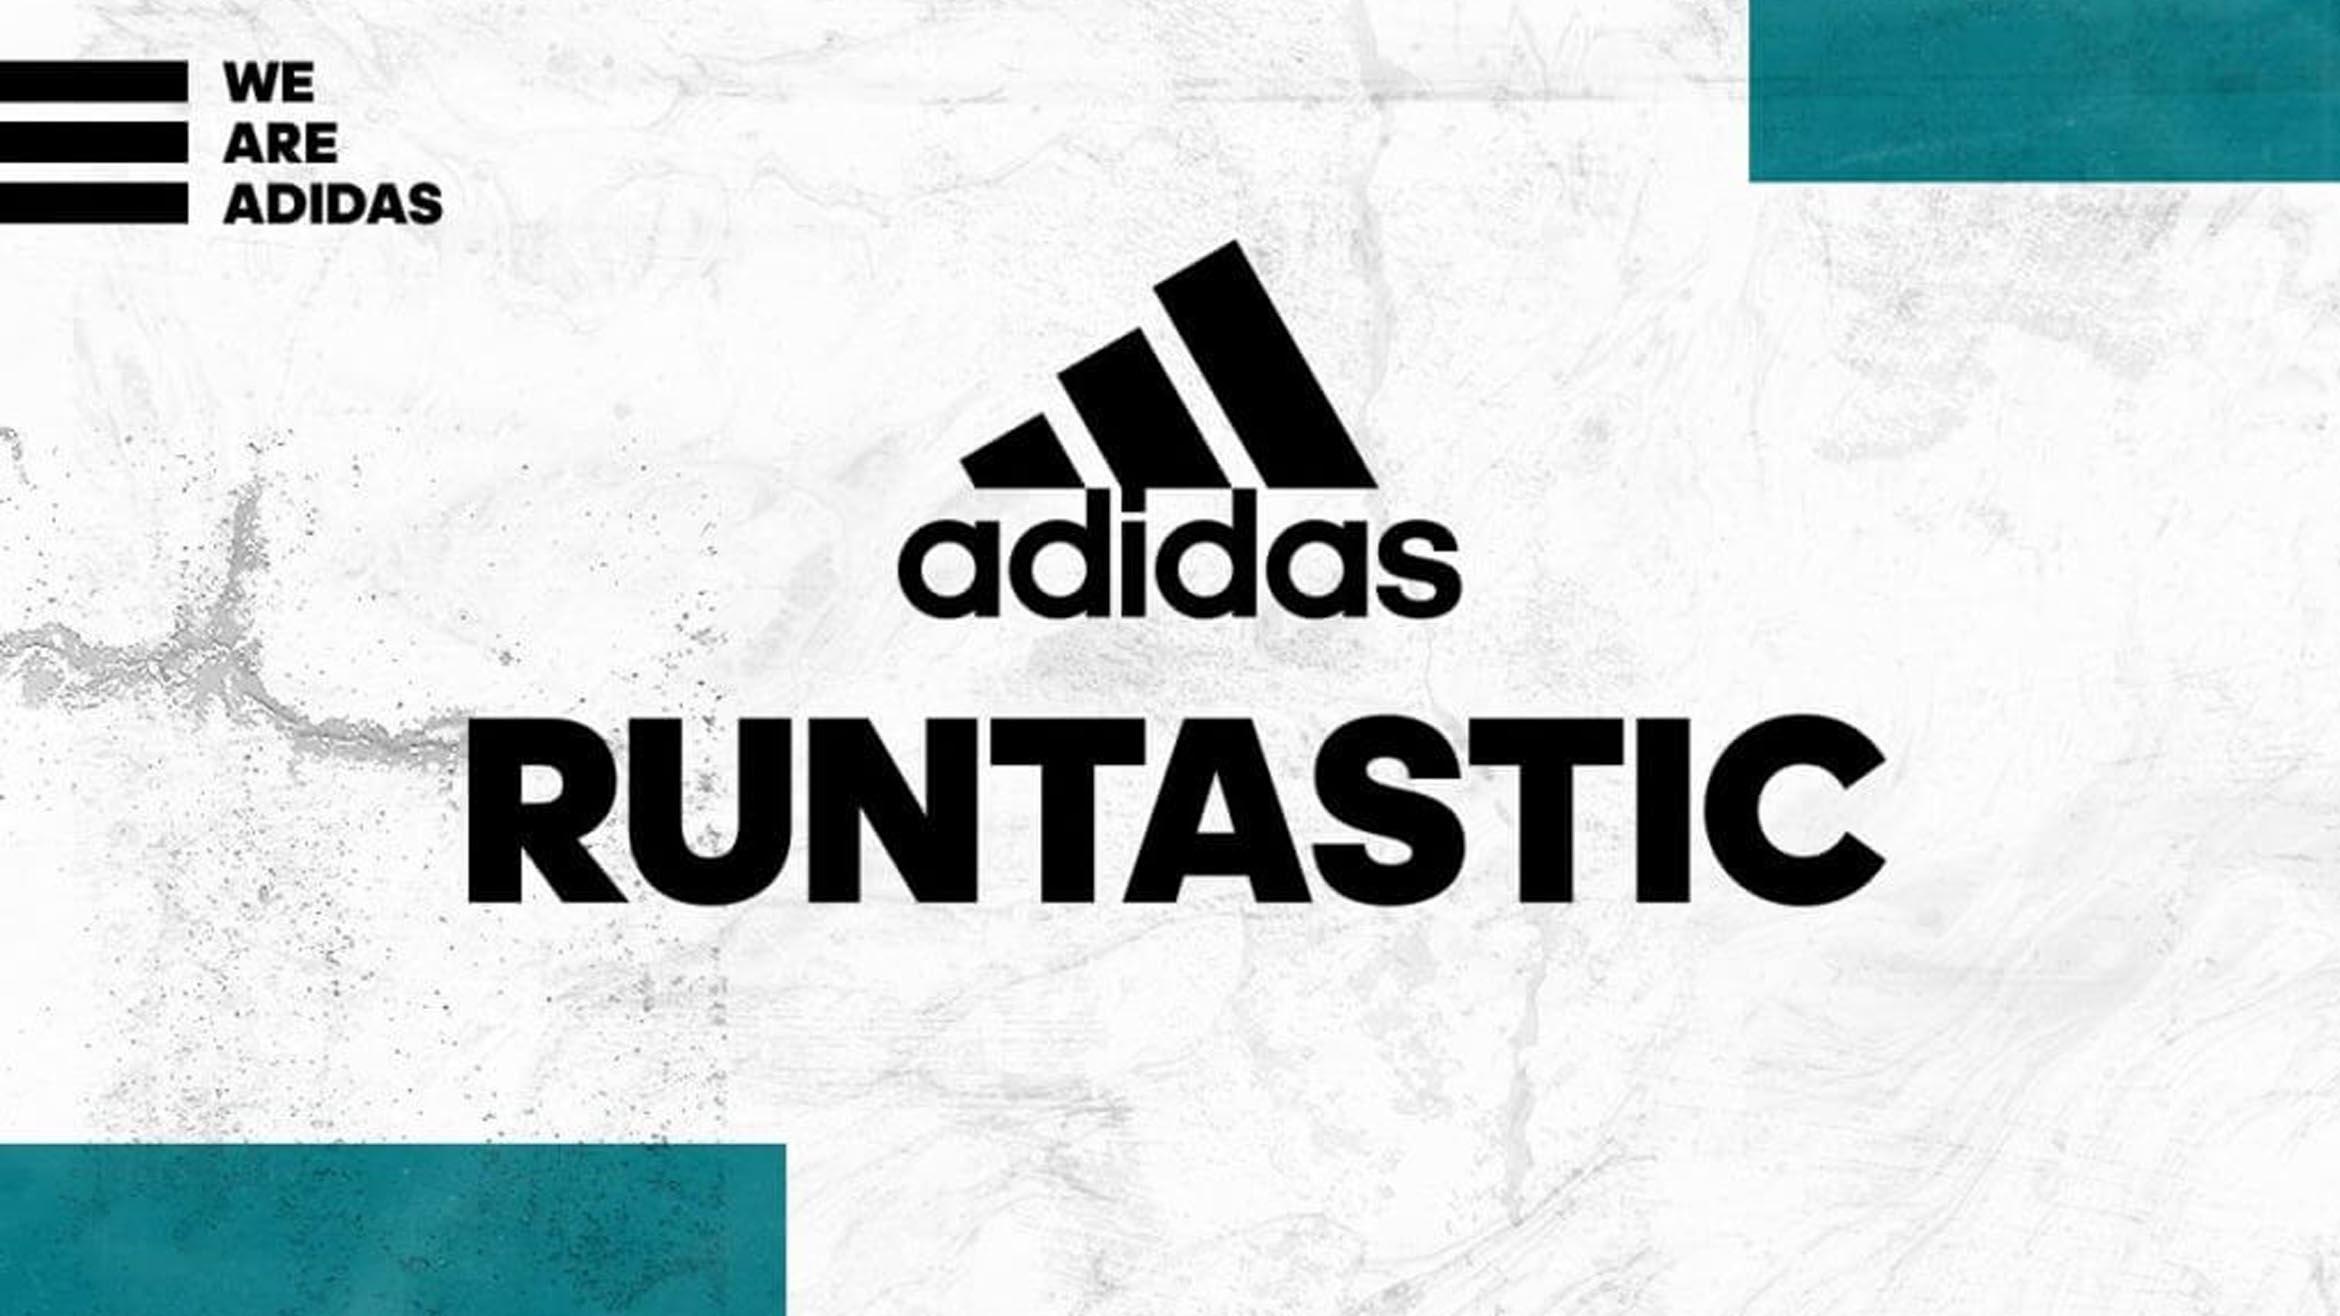 Die prominente Rückkehr des Markennamens Runtastic ist ein klares Signal von Adidas, das Startup eigenständig zu lassen - Foto: Runtastic